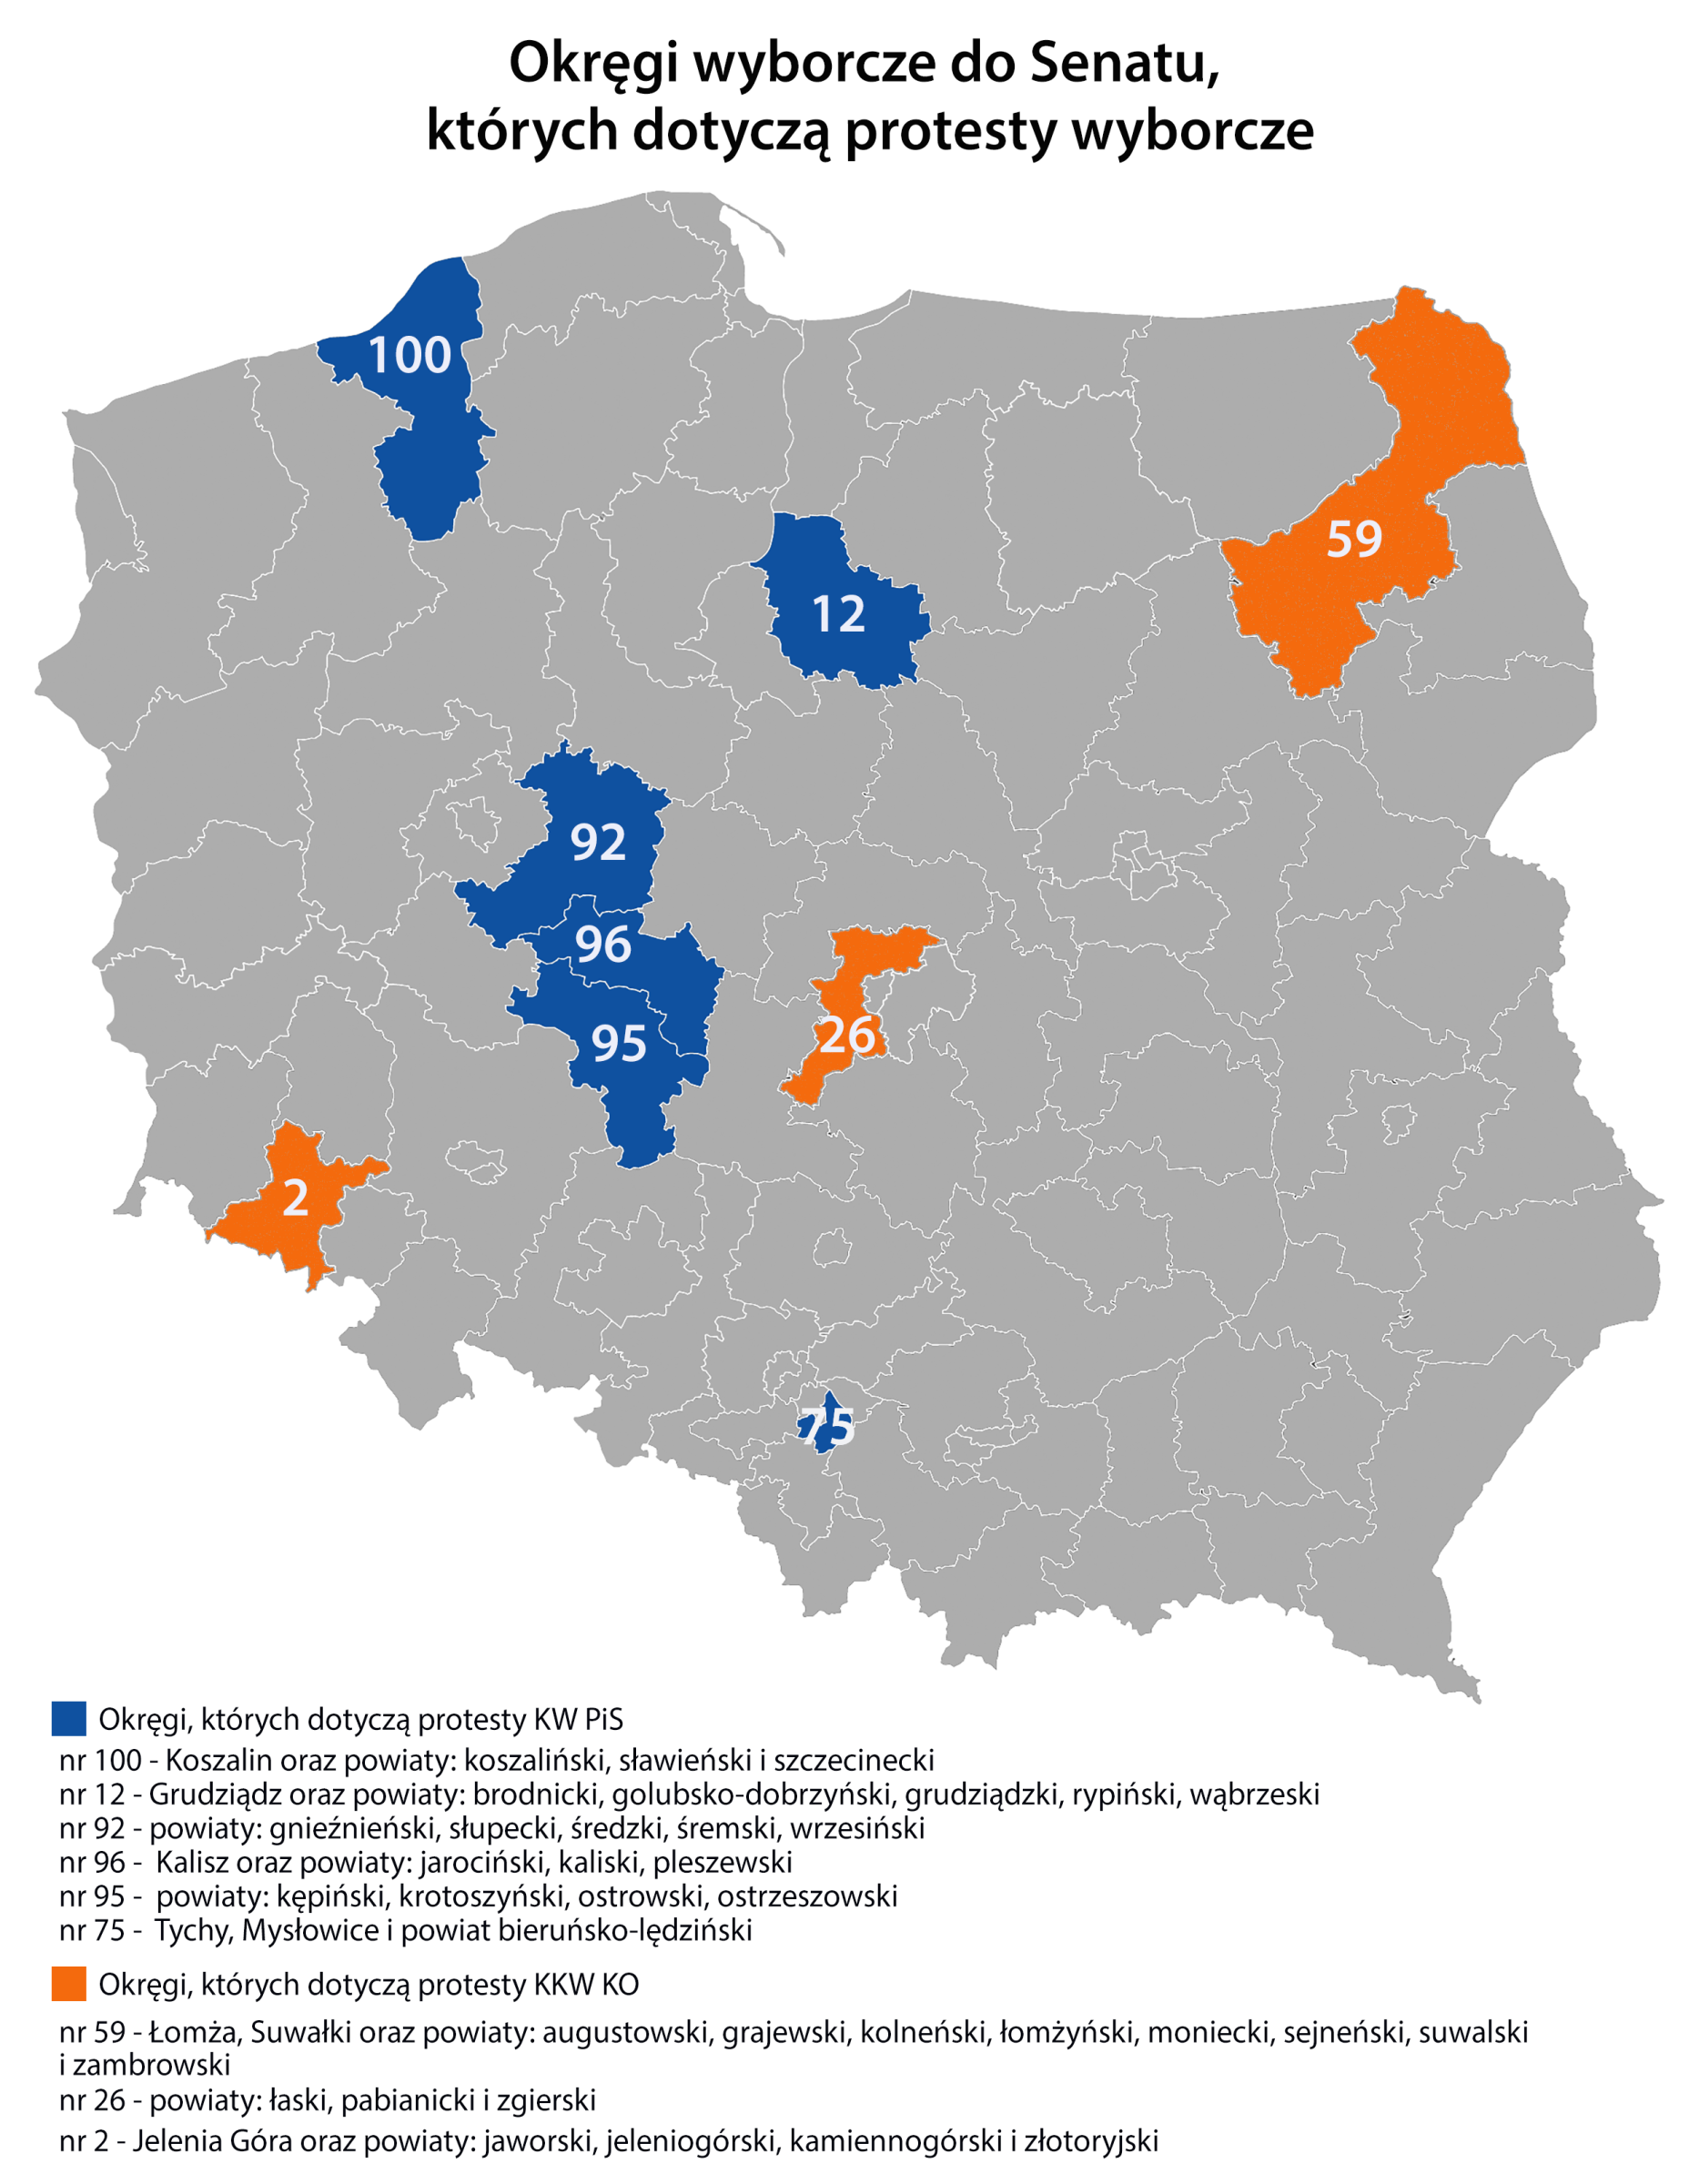 Tych okręgów dotyczyły protesty wyborcze PiS i KO